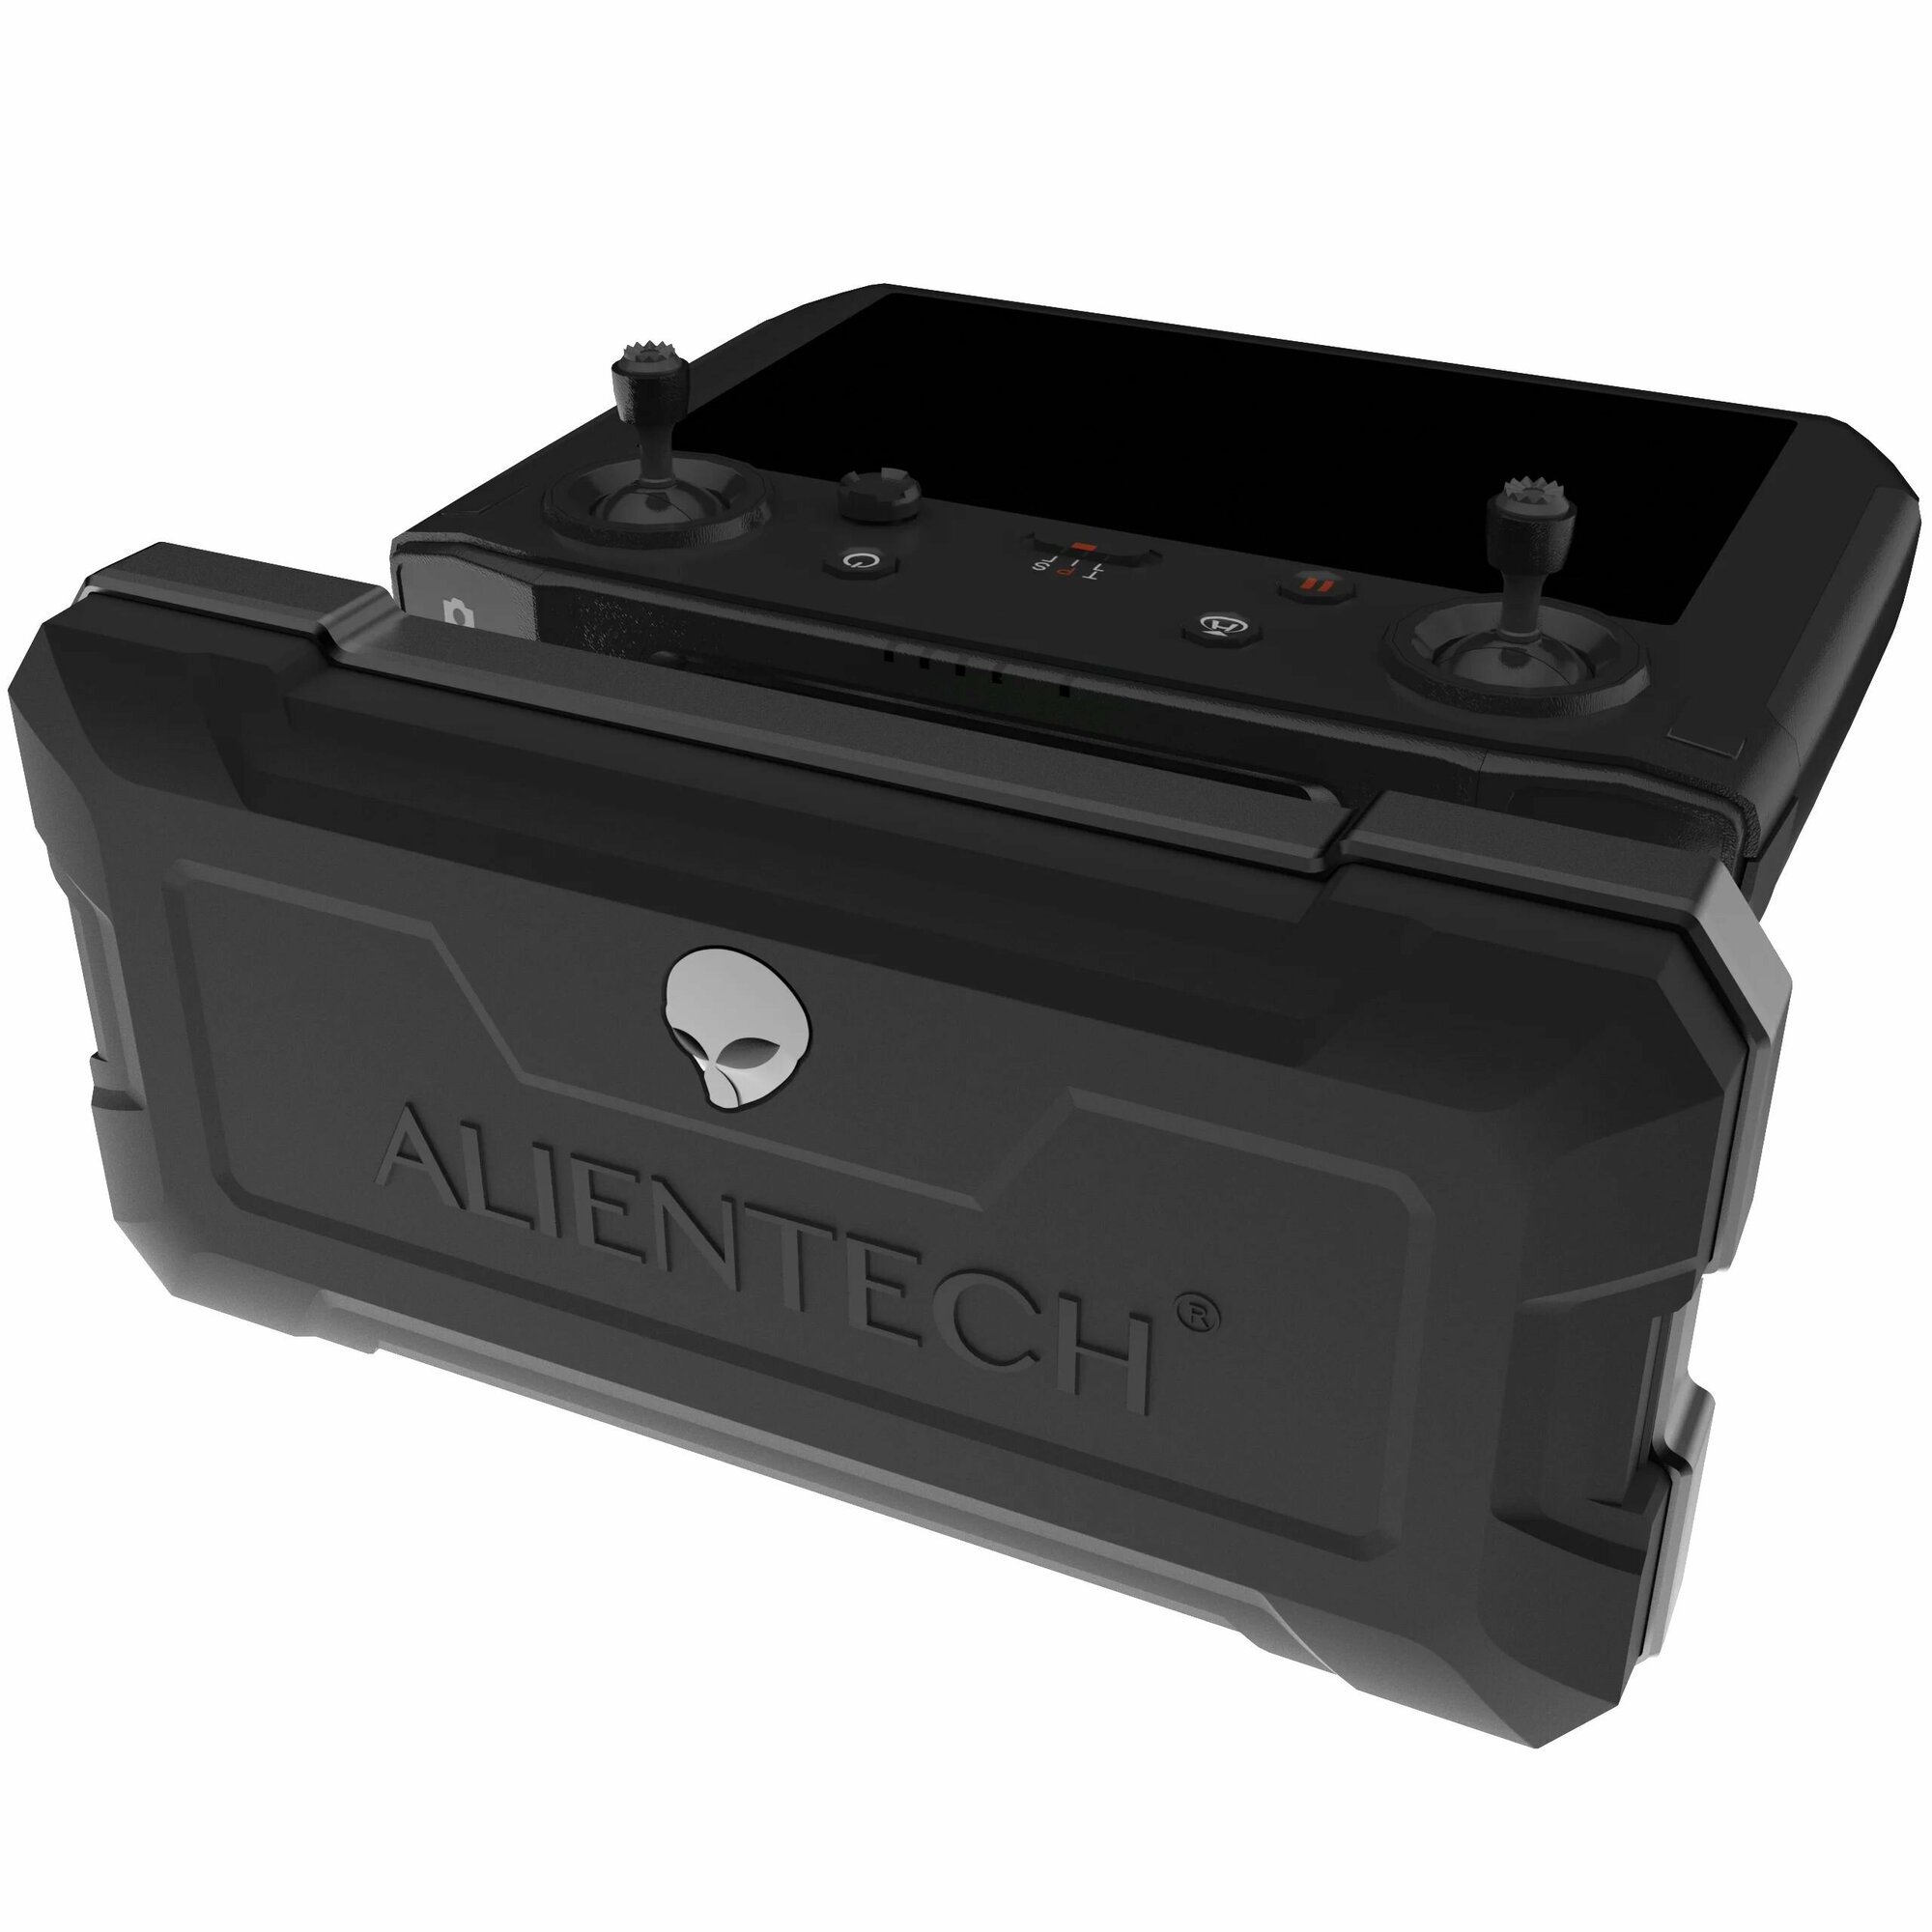 Усилитель сигнала Alientech Duo 3 2,4G/5,2G/5,8G расширитель диапазона для Дронов DJI